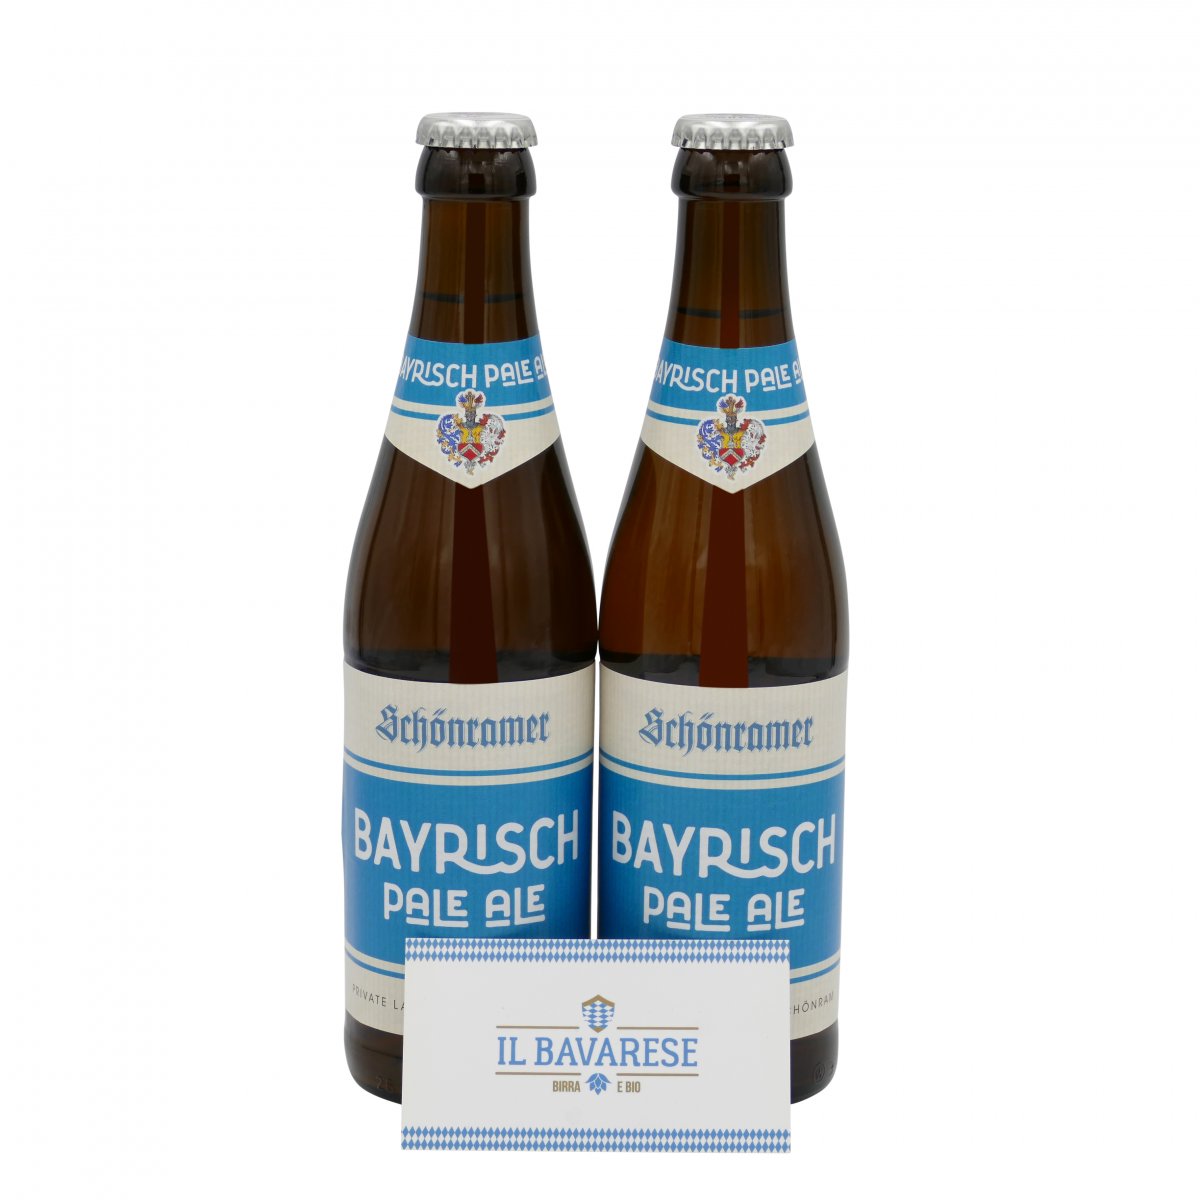 Birra Bayrisch Pale Ale 33 cl Birra Pale Ale non pastorizzata e non filtrata